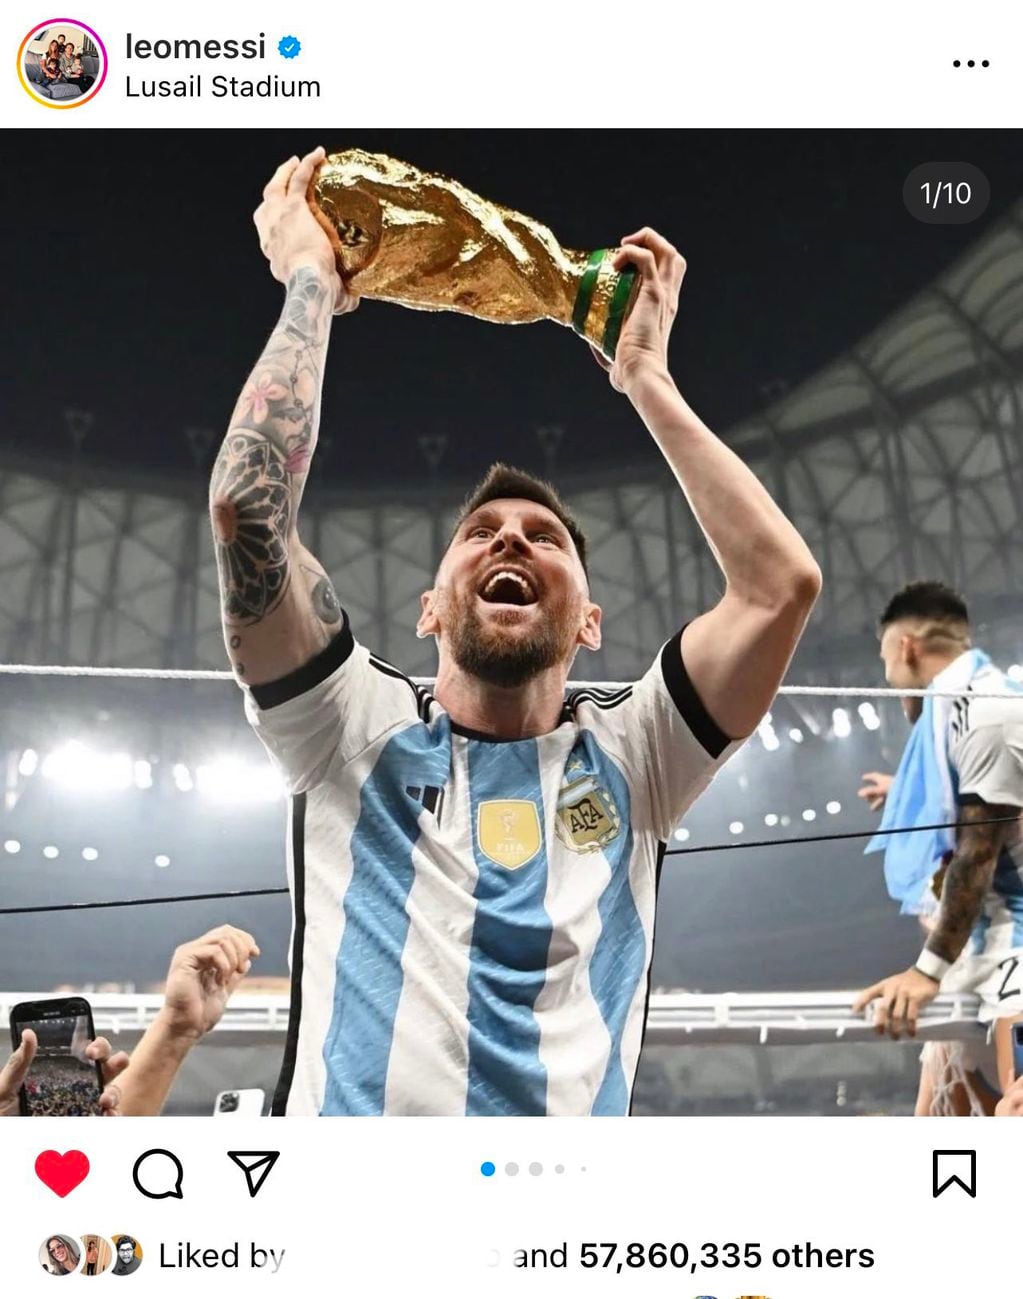 Vaso termino Stanley Mundialmente Cerveceros Argentina Mundial Camepones  Messi